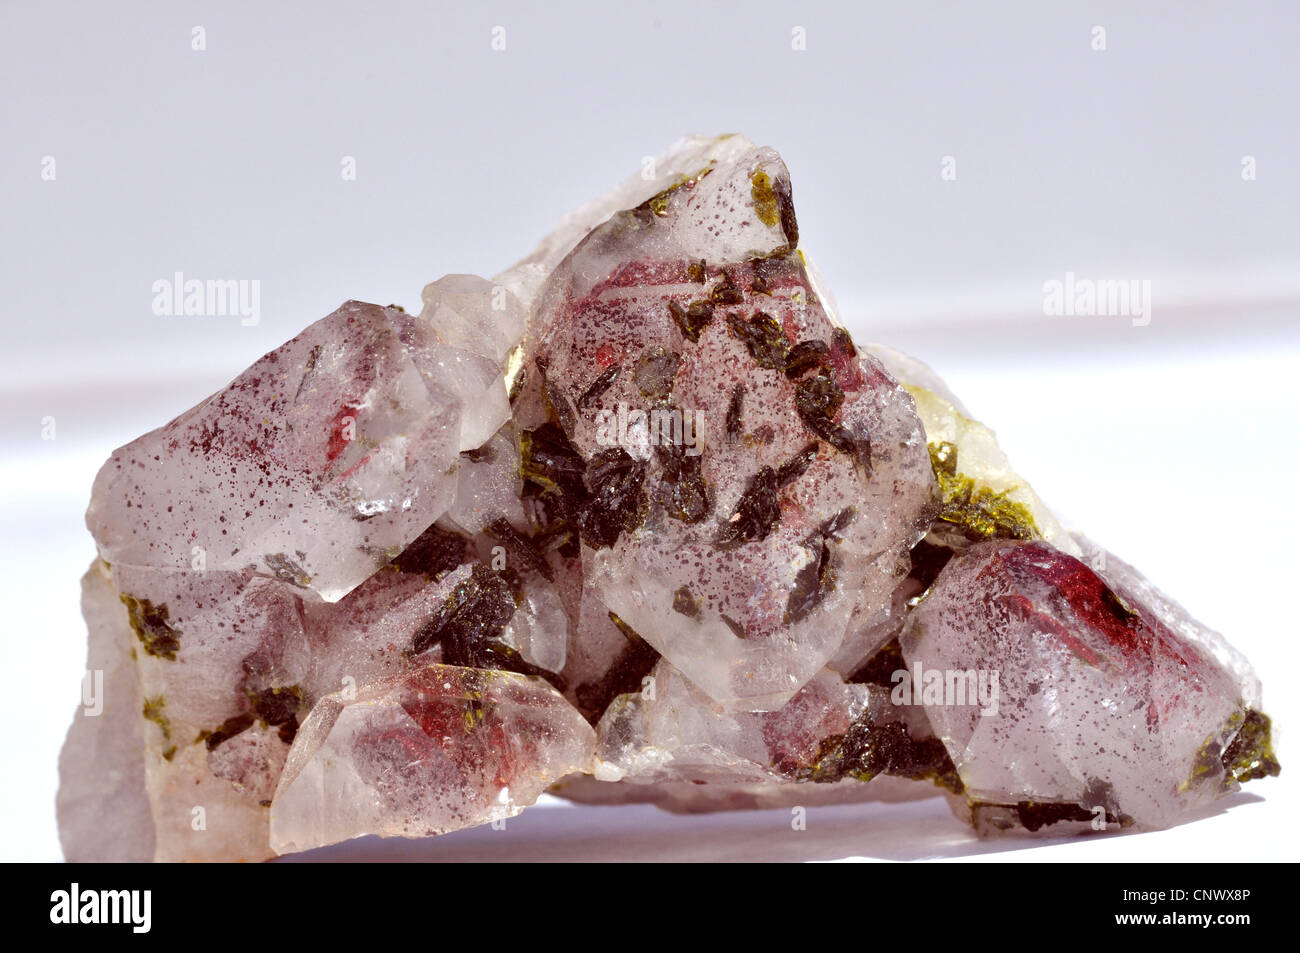 El cristal de roca con cristales de Epidota e inclusiones de haematite Foto de stock